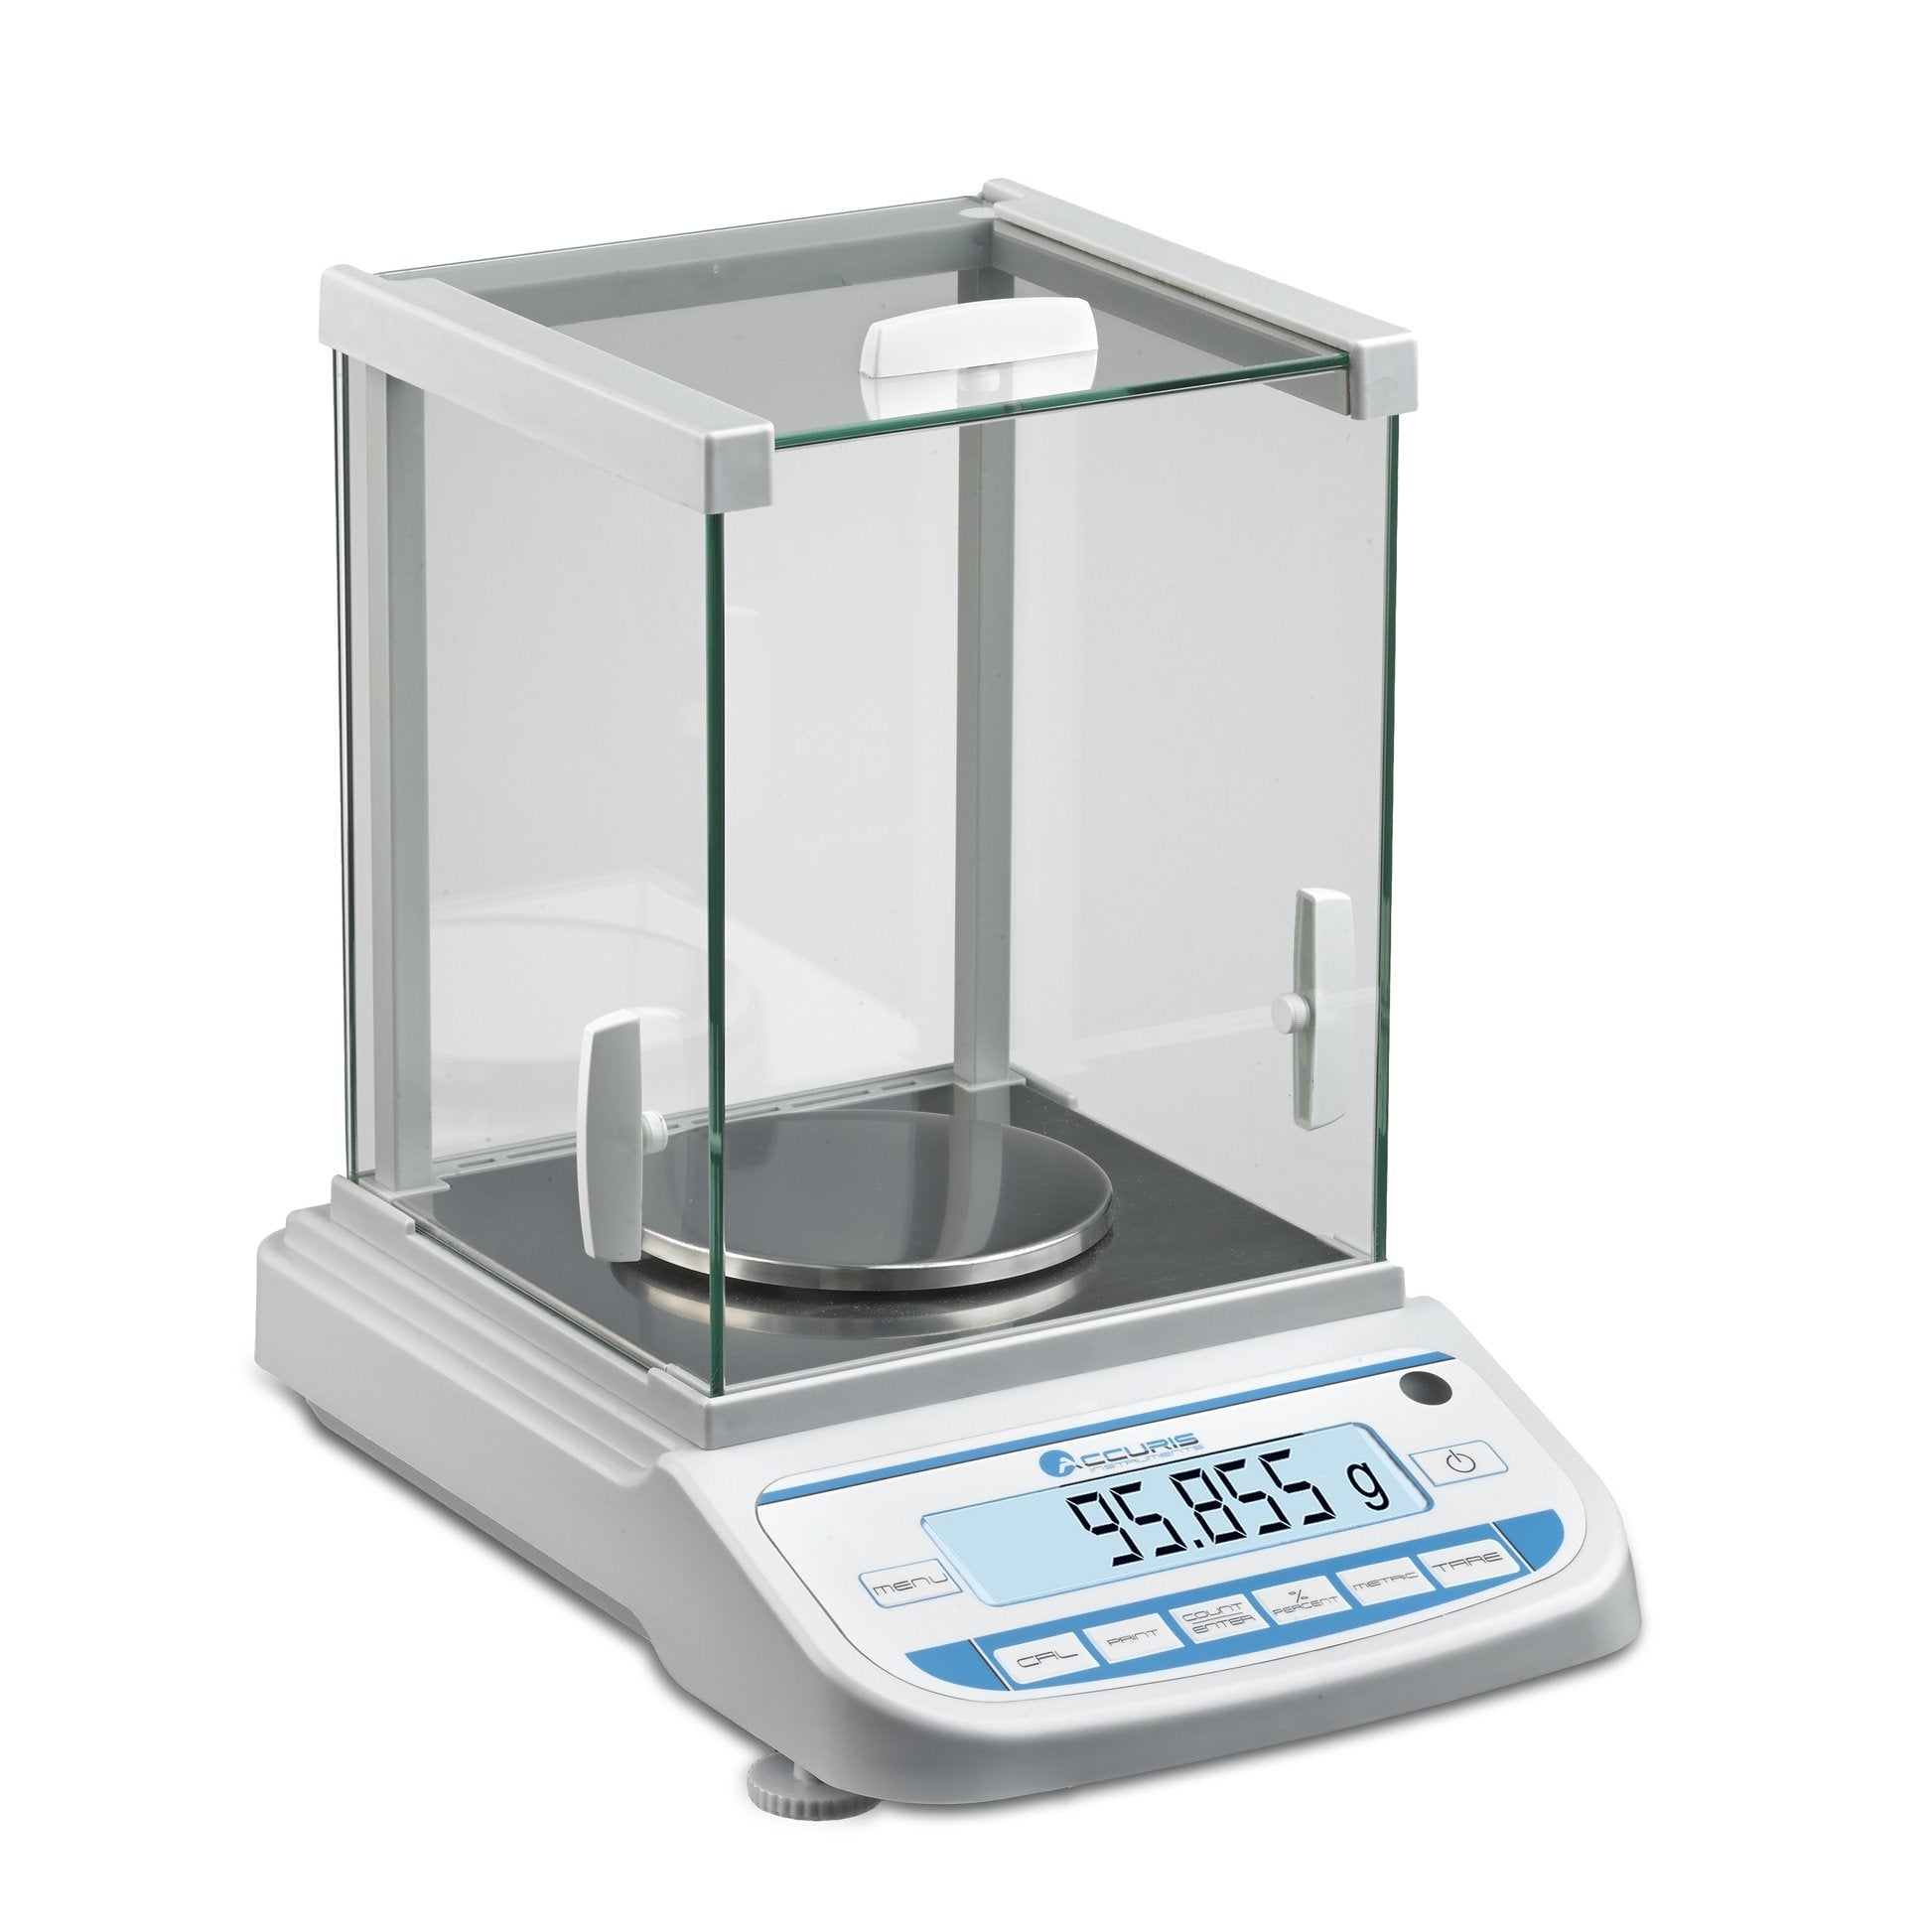 Accuris W3200-1200 Precision Balance, 1200 grams, readability 0.01grams, 115V